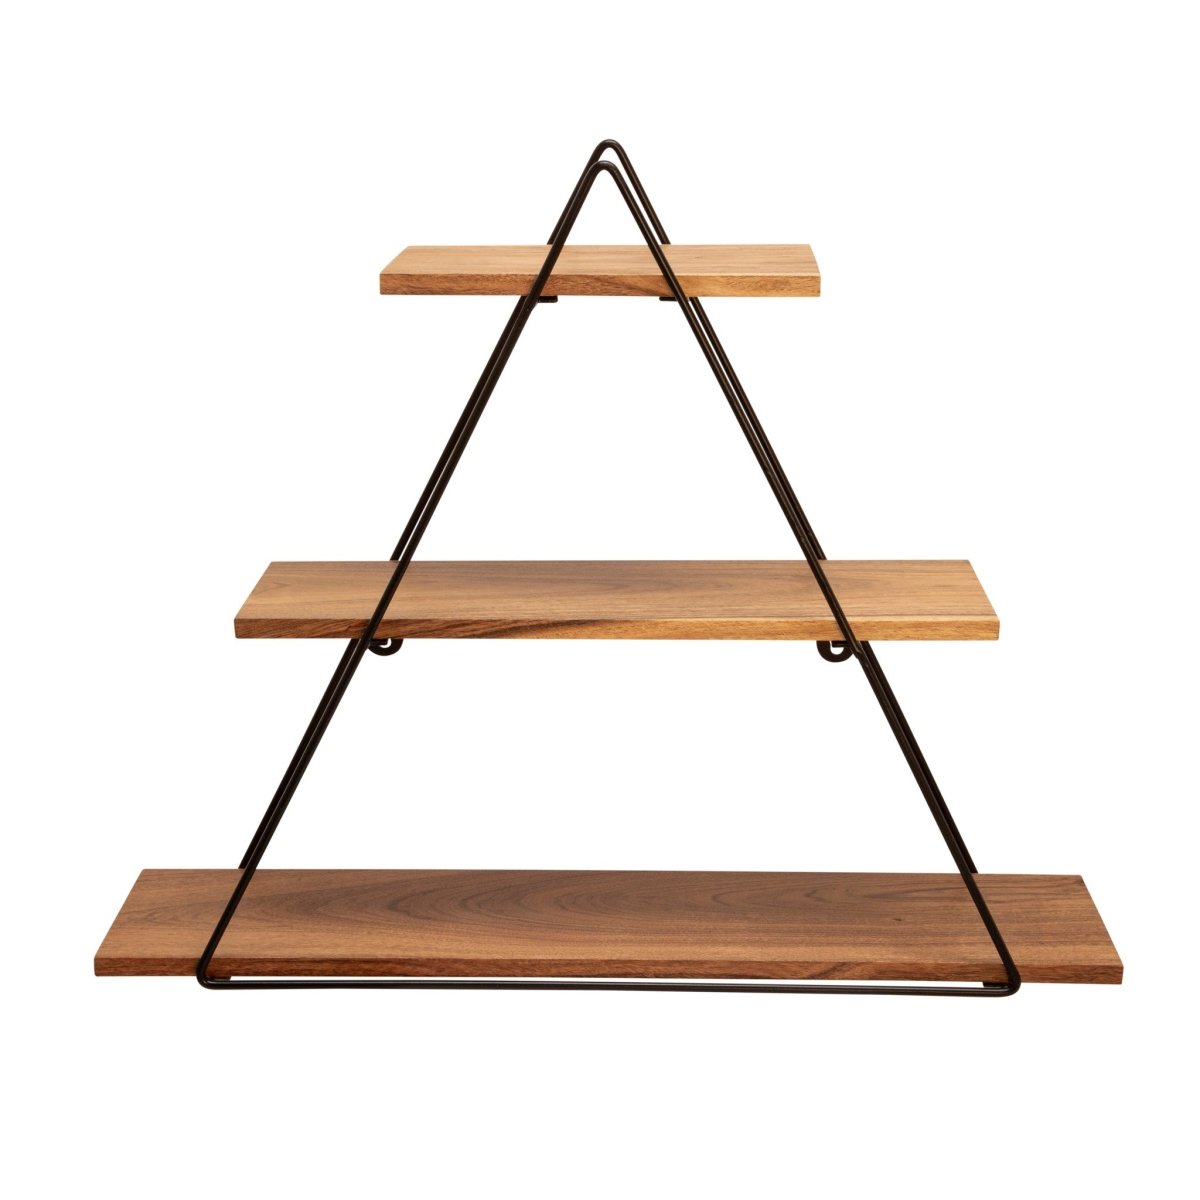 Sagebrook Home 3-Tier Triangle Metal & Wood Wall Shelf, 20"H - lily & onyx